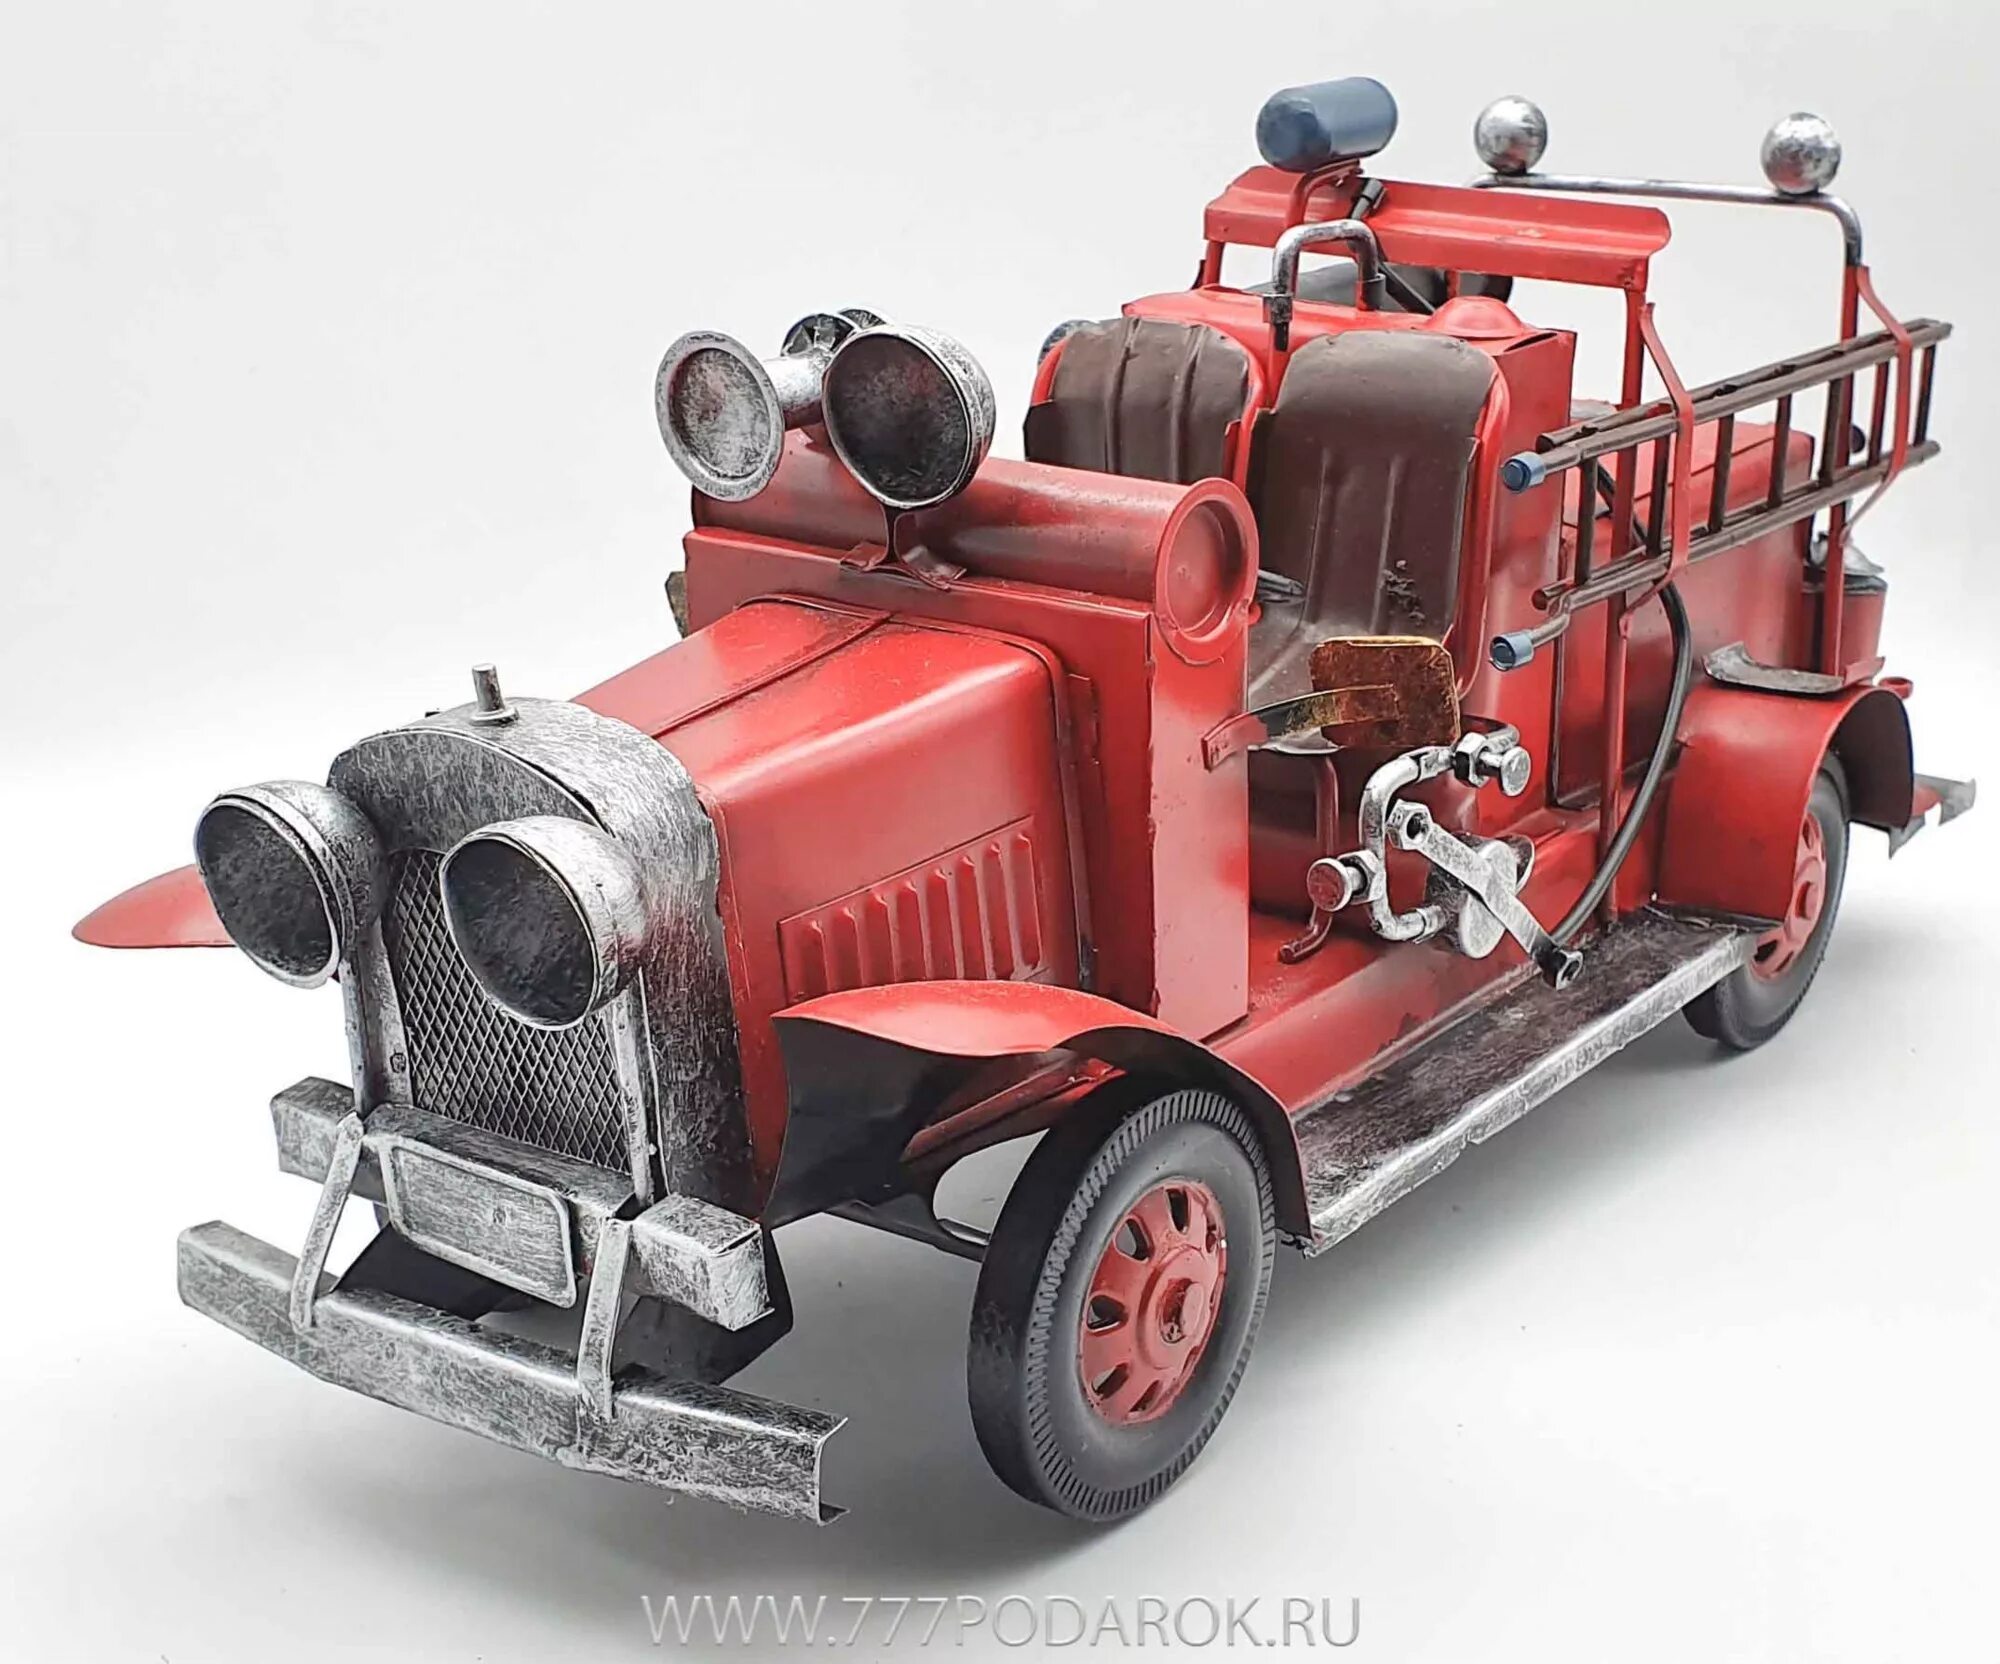 Моделька пожарной машины. Модель ретро автомобиля пожарная машина. Сувениры пожарная машина. Коллекционные пожарные машины.